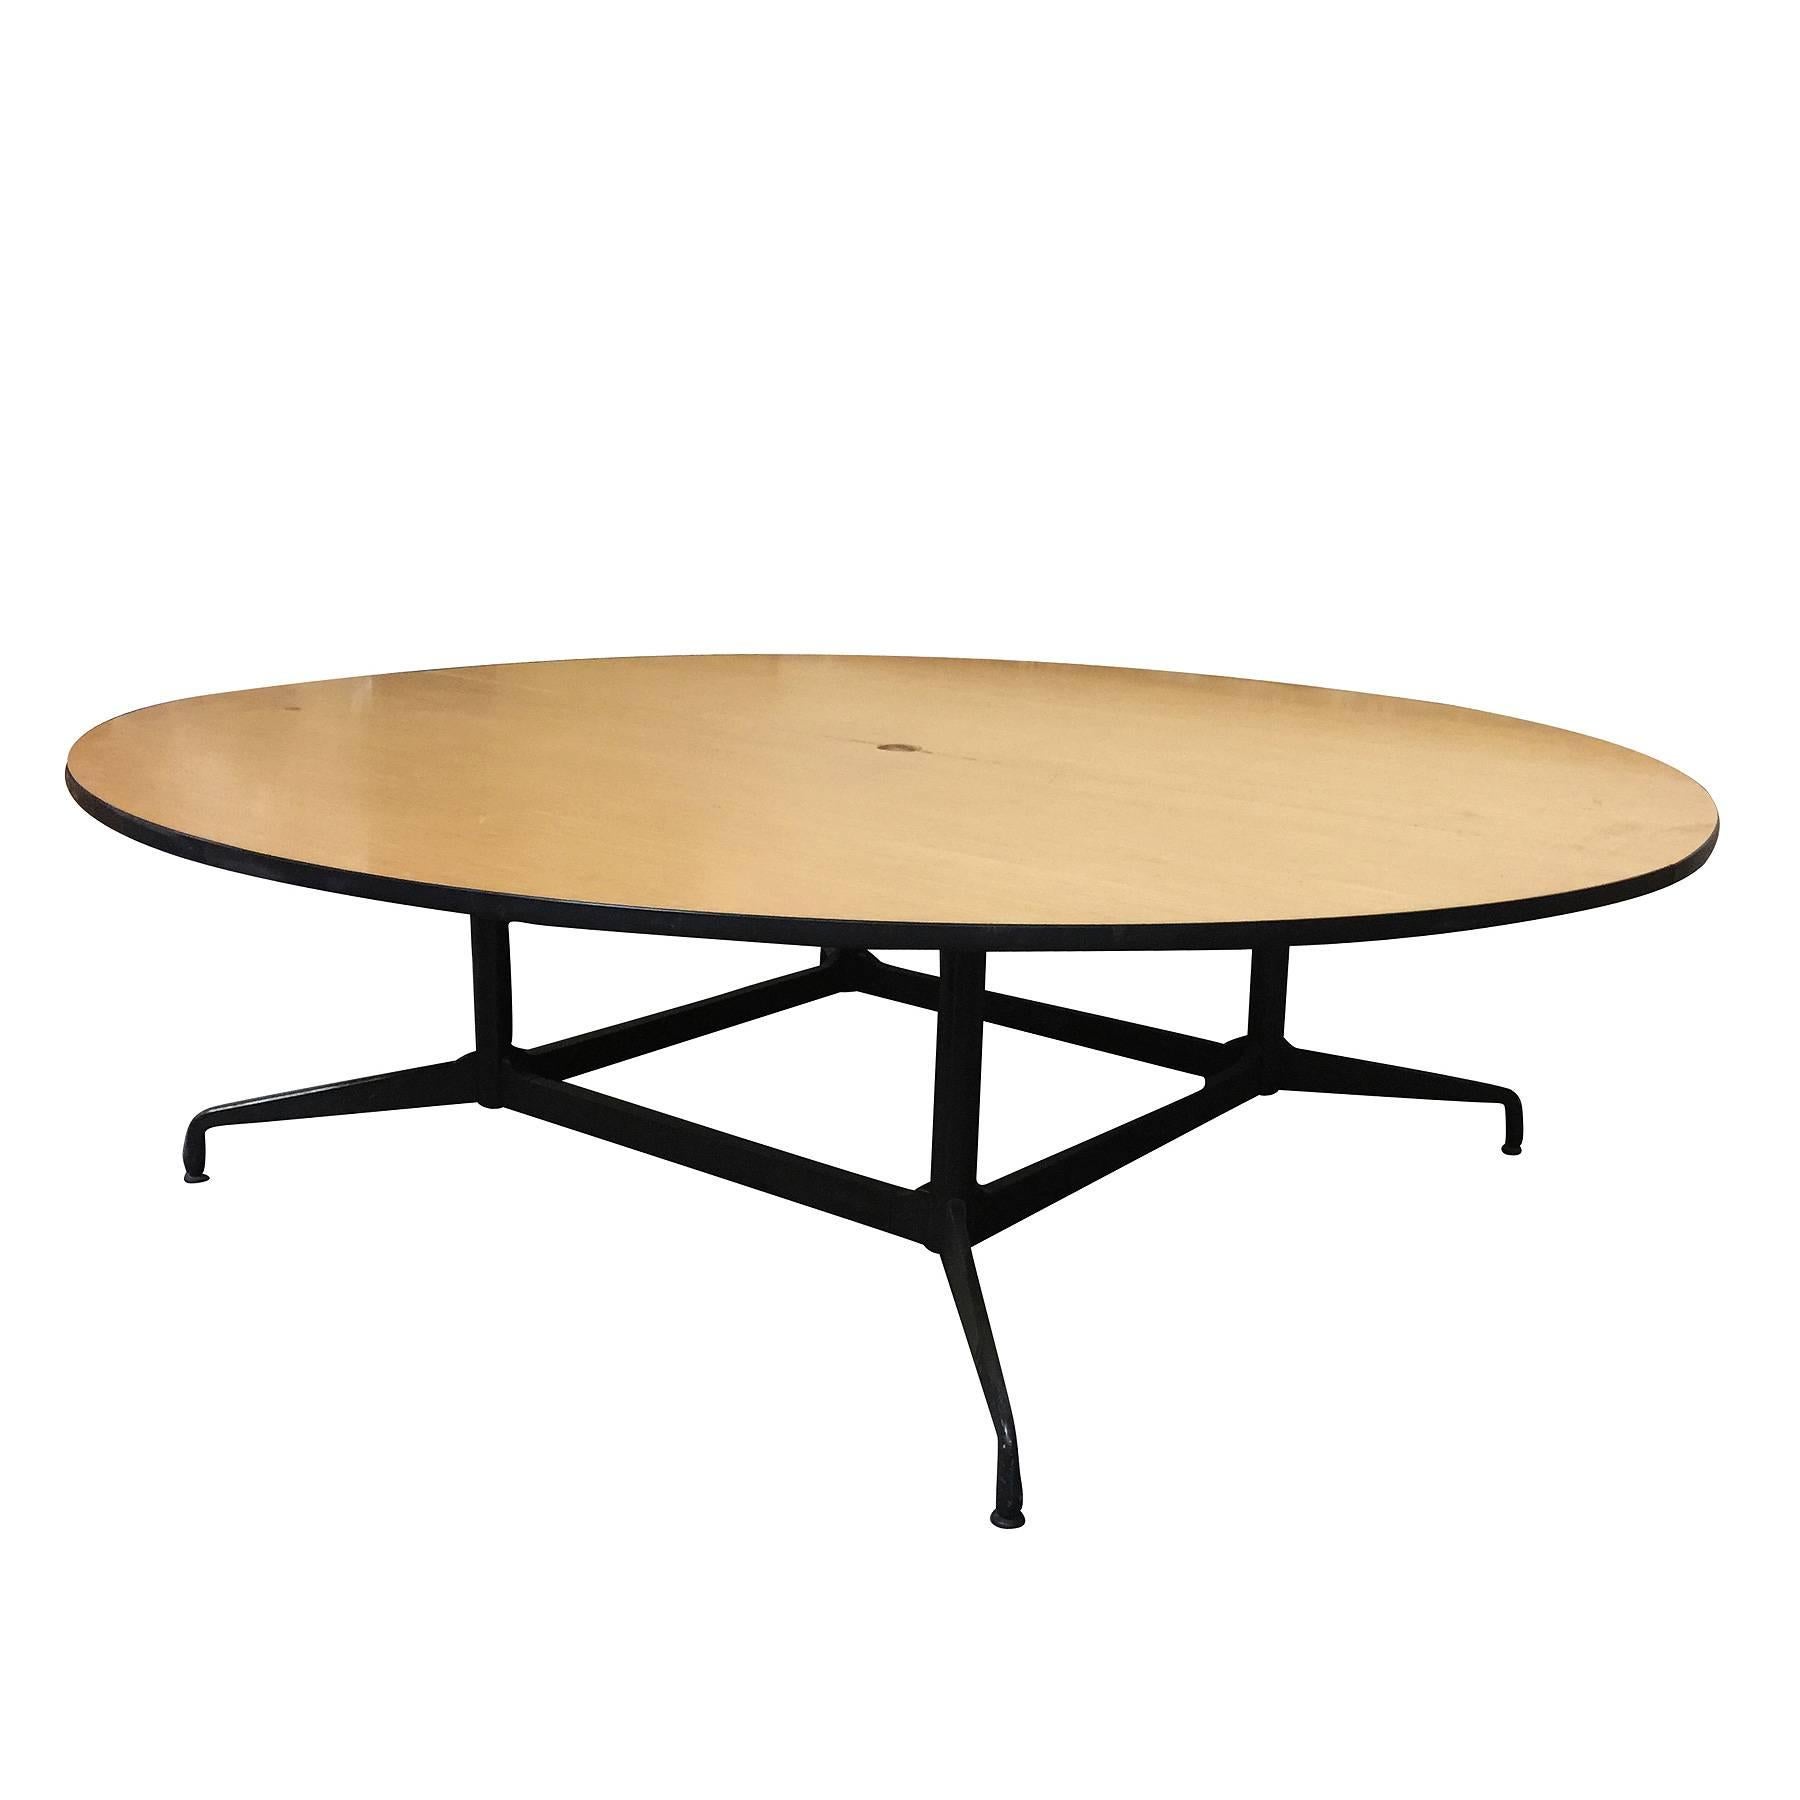 
Großer runder Konferenztisch von Charles und Ray Eames mit 8' Fuß, entworfen von Herman Miller. 

Der Tisch verfügt über eine große zweiteilige runde Laminatplatte aus Eichenfurnier mit einem Untergestell aus Stahl und Aluminium. Dies ist ein